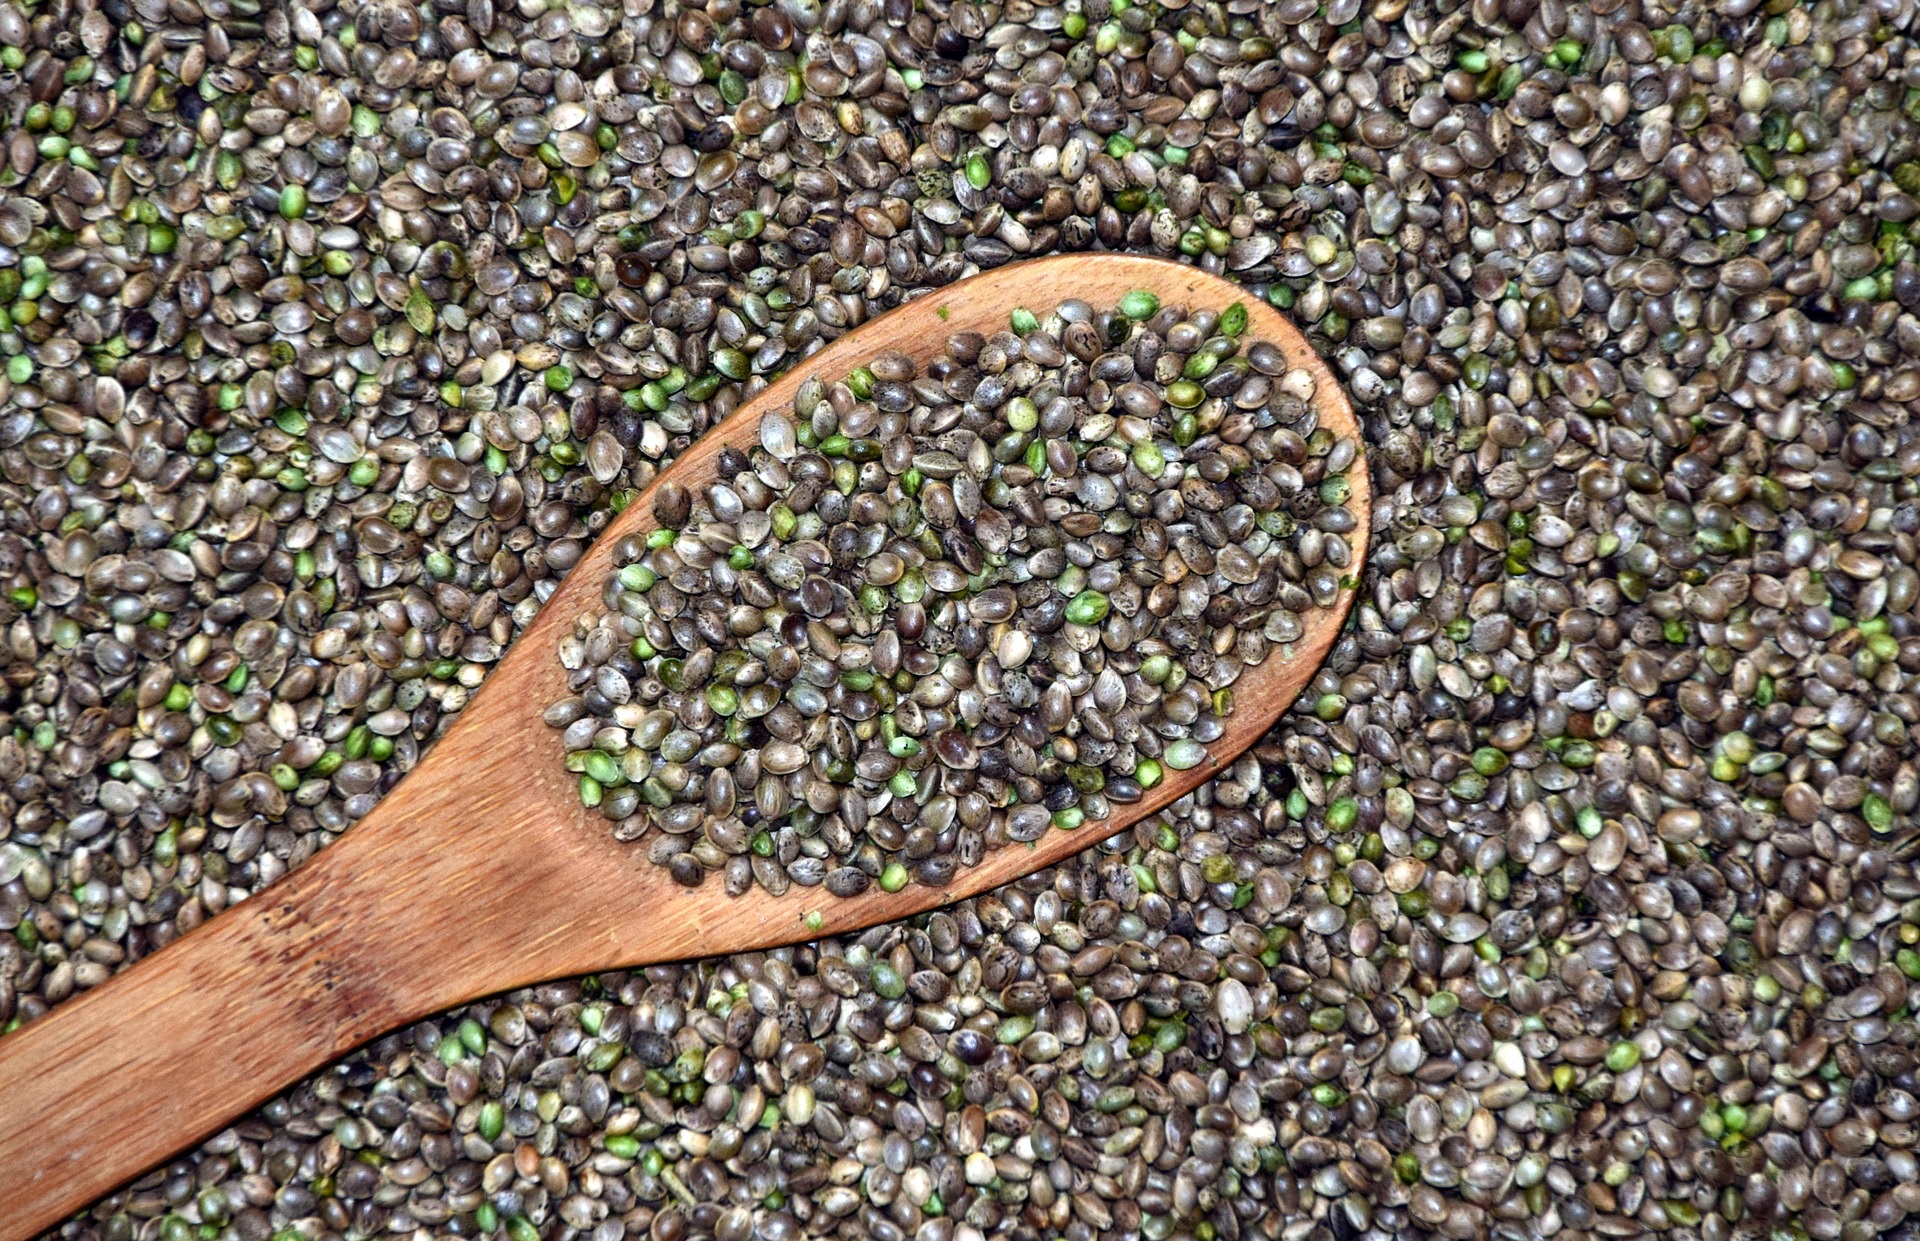 Come usare i semi di canapa per dimagrire: i consigli utili